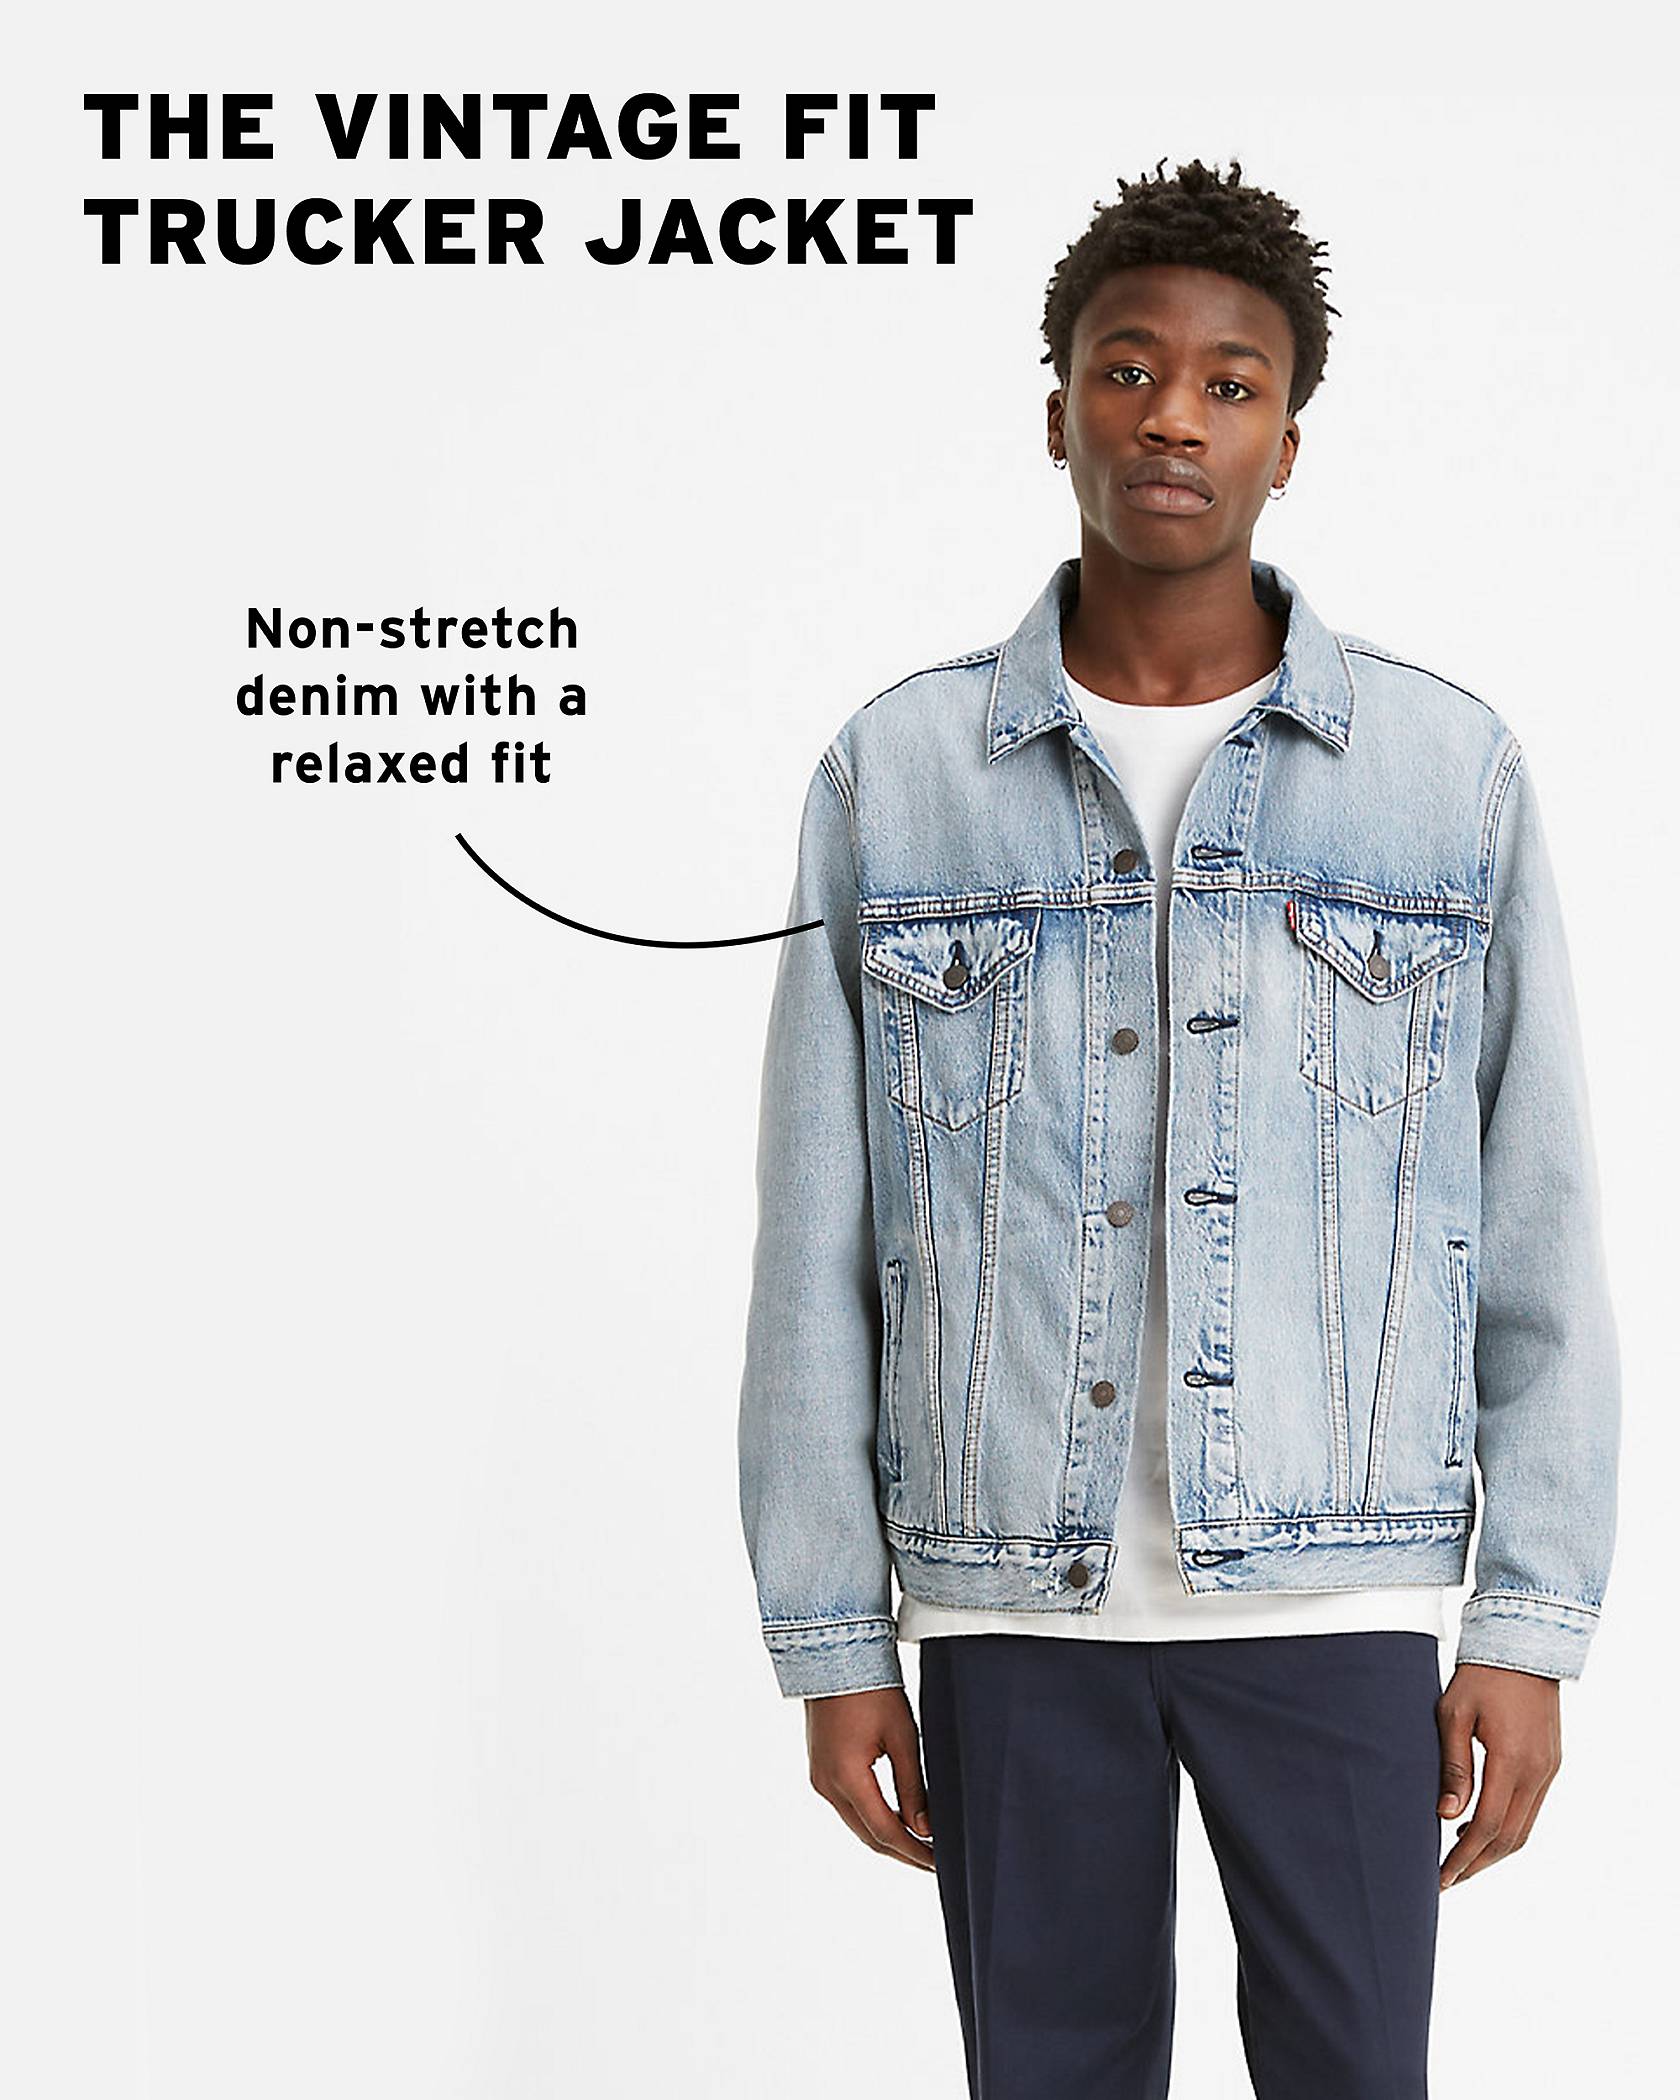 Trucker Jackets: Top 6 Fits & Styling for Men & Women